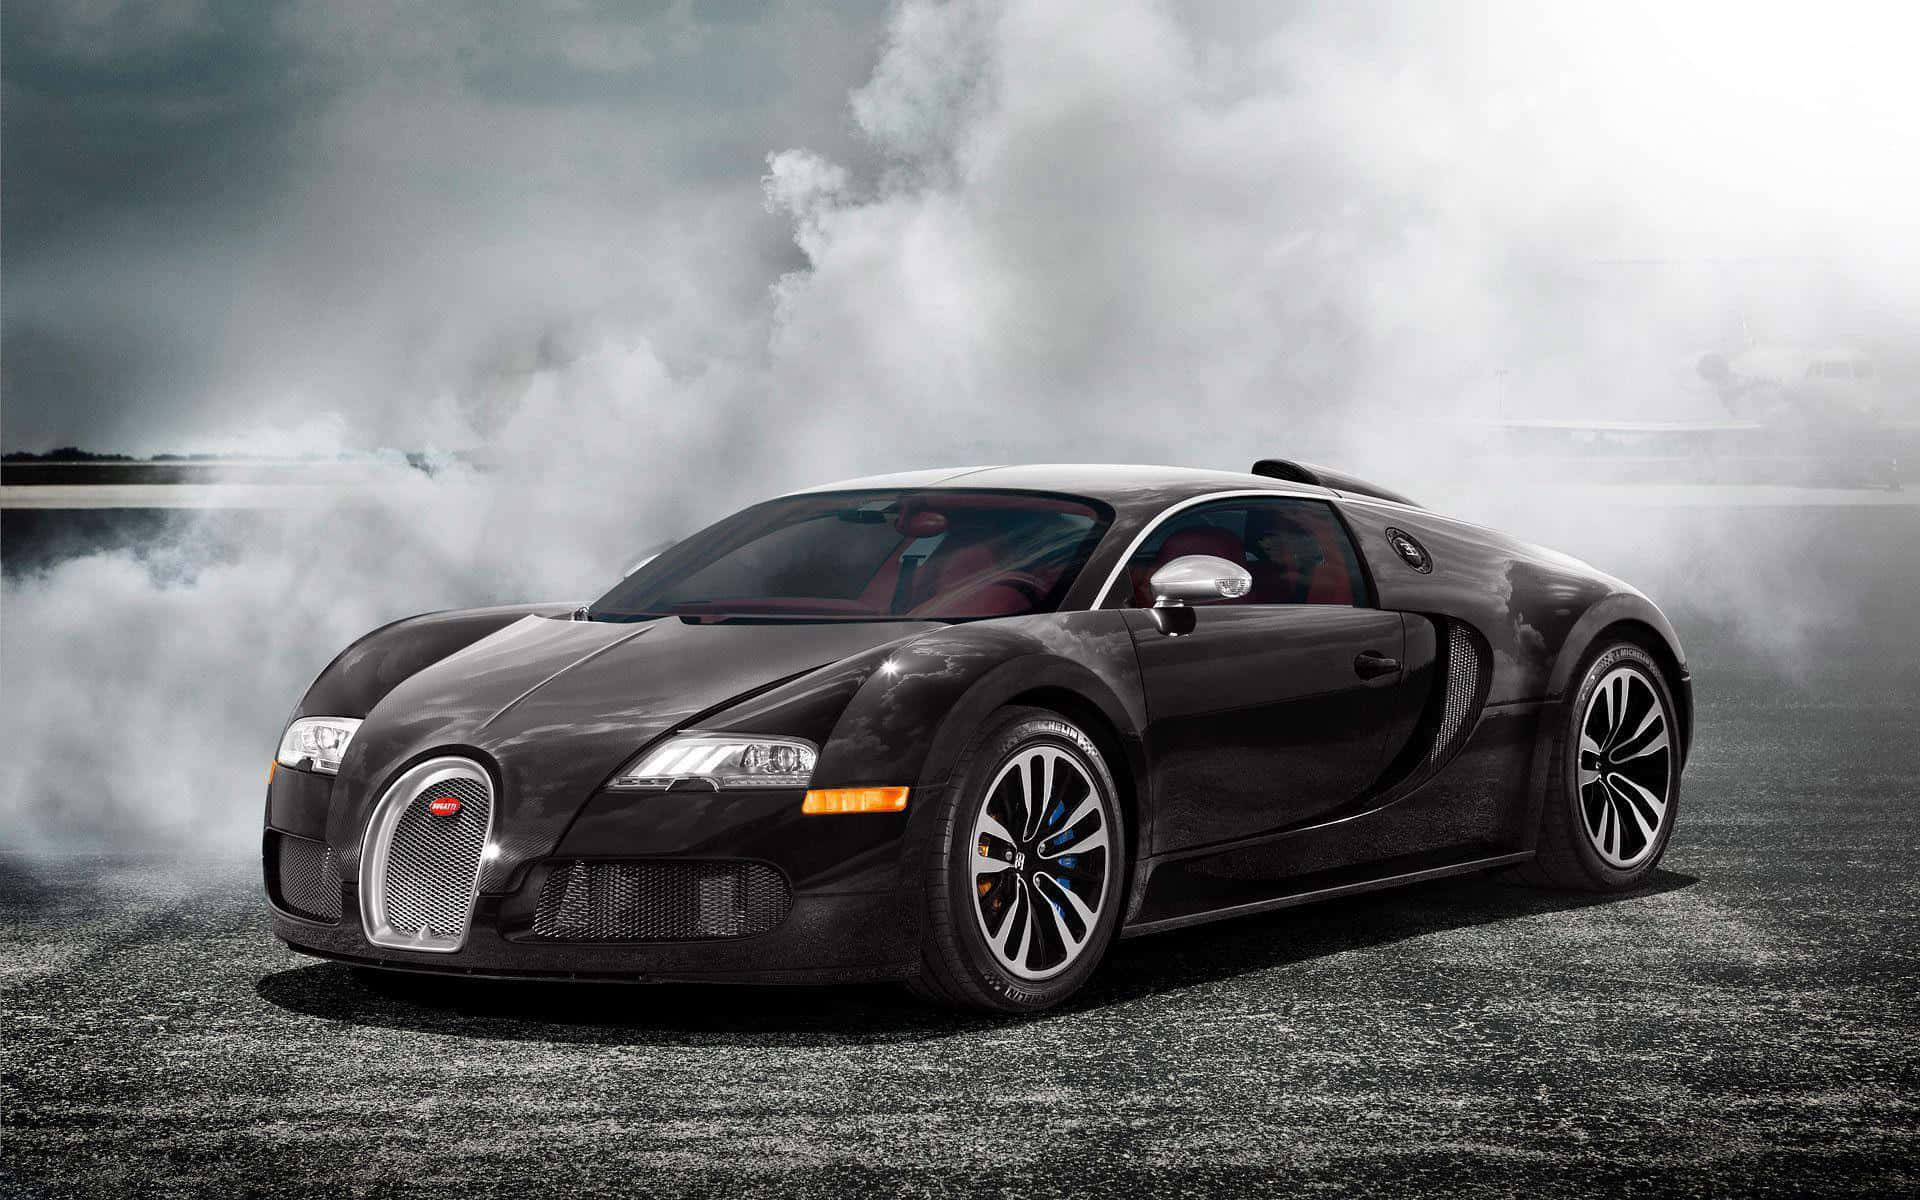 Detbästa Bugatti Classic Black Veyron Smokey För Dator- Eller Mobilbakgrund. Wallpaper